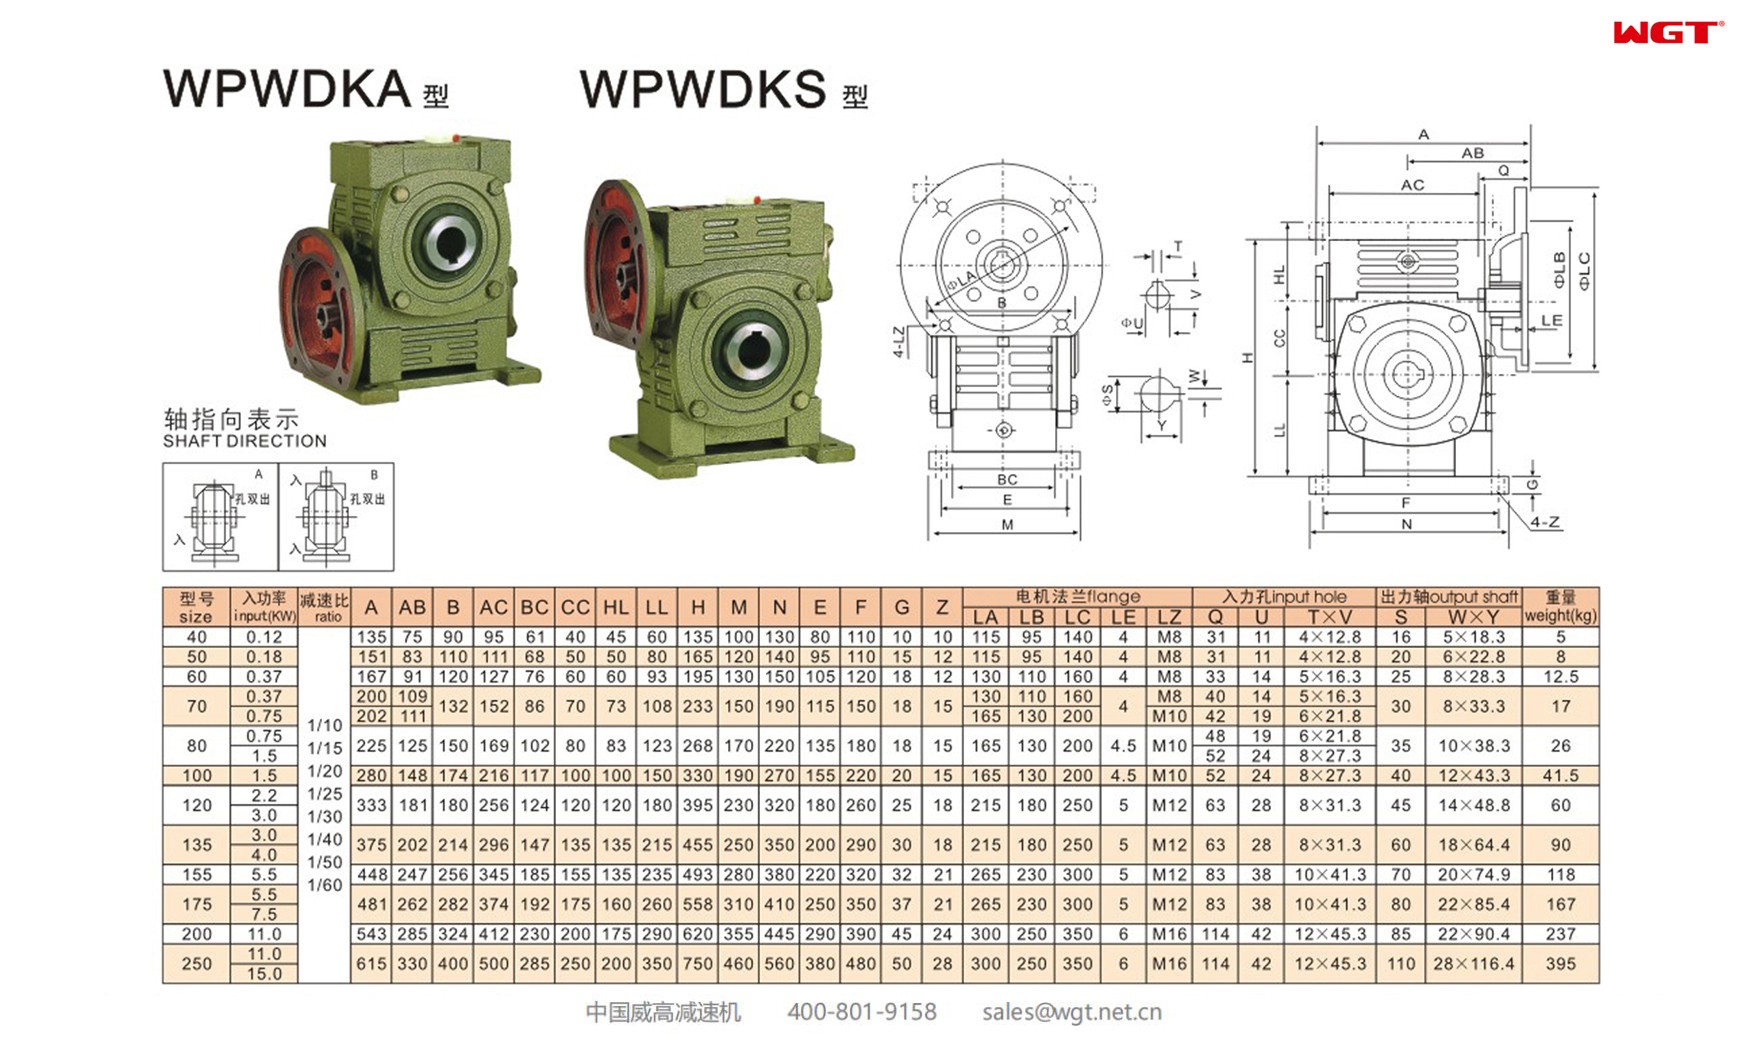 WPWDKA200 worm gear reducer universal speed reducer